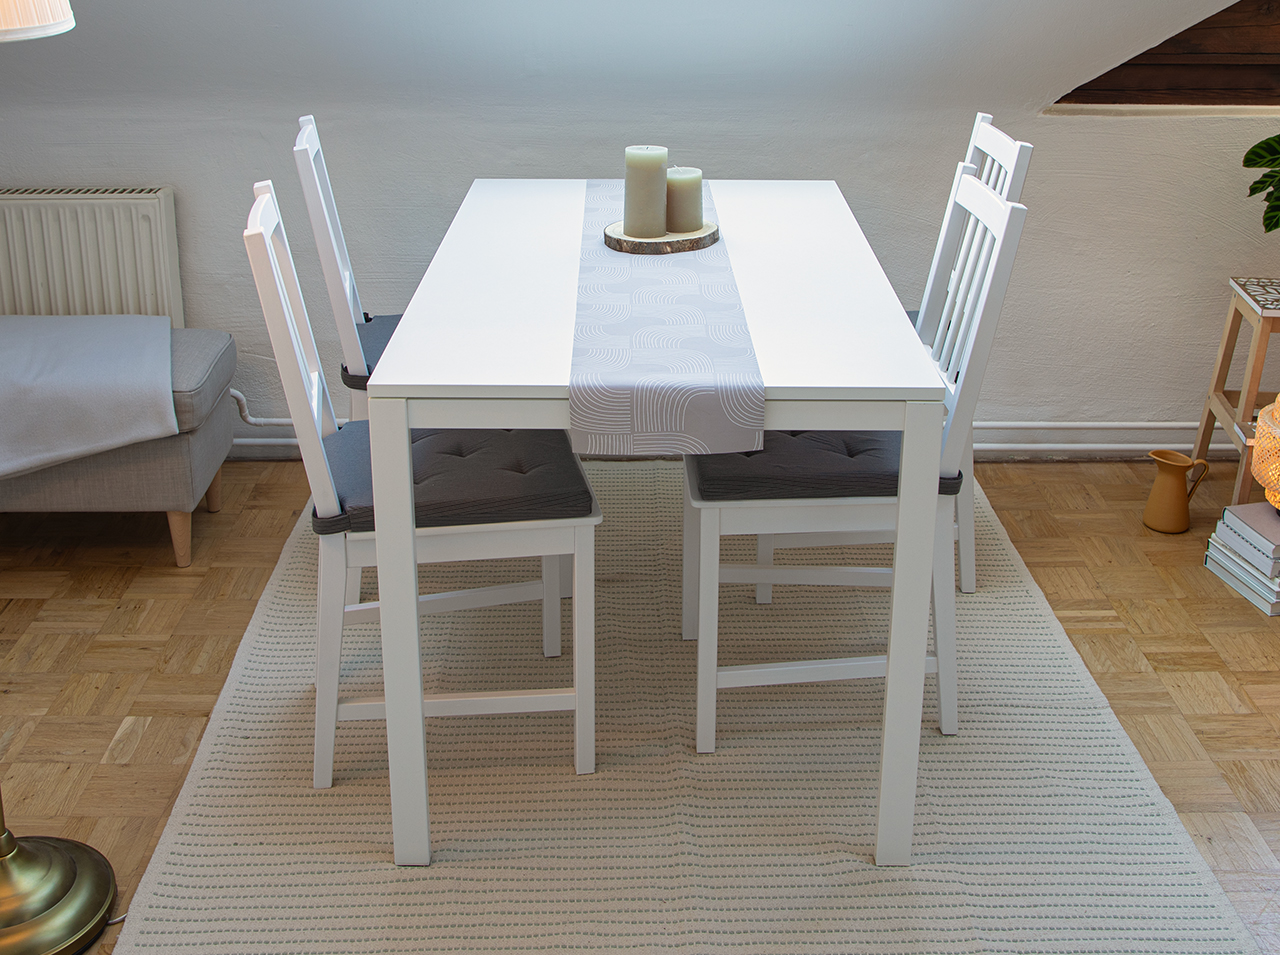 Chemin de table avec motif graphique allover moderne en blanc sur fond beige.